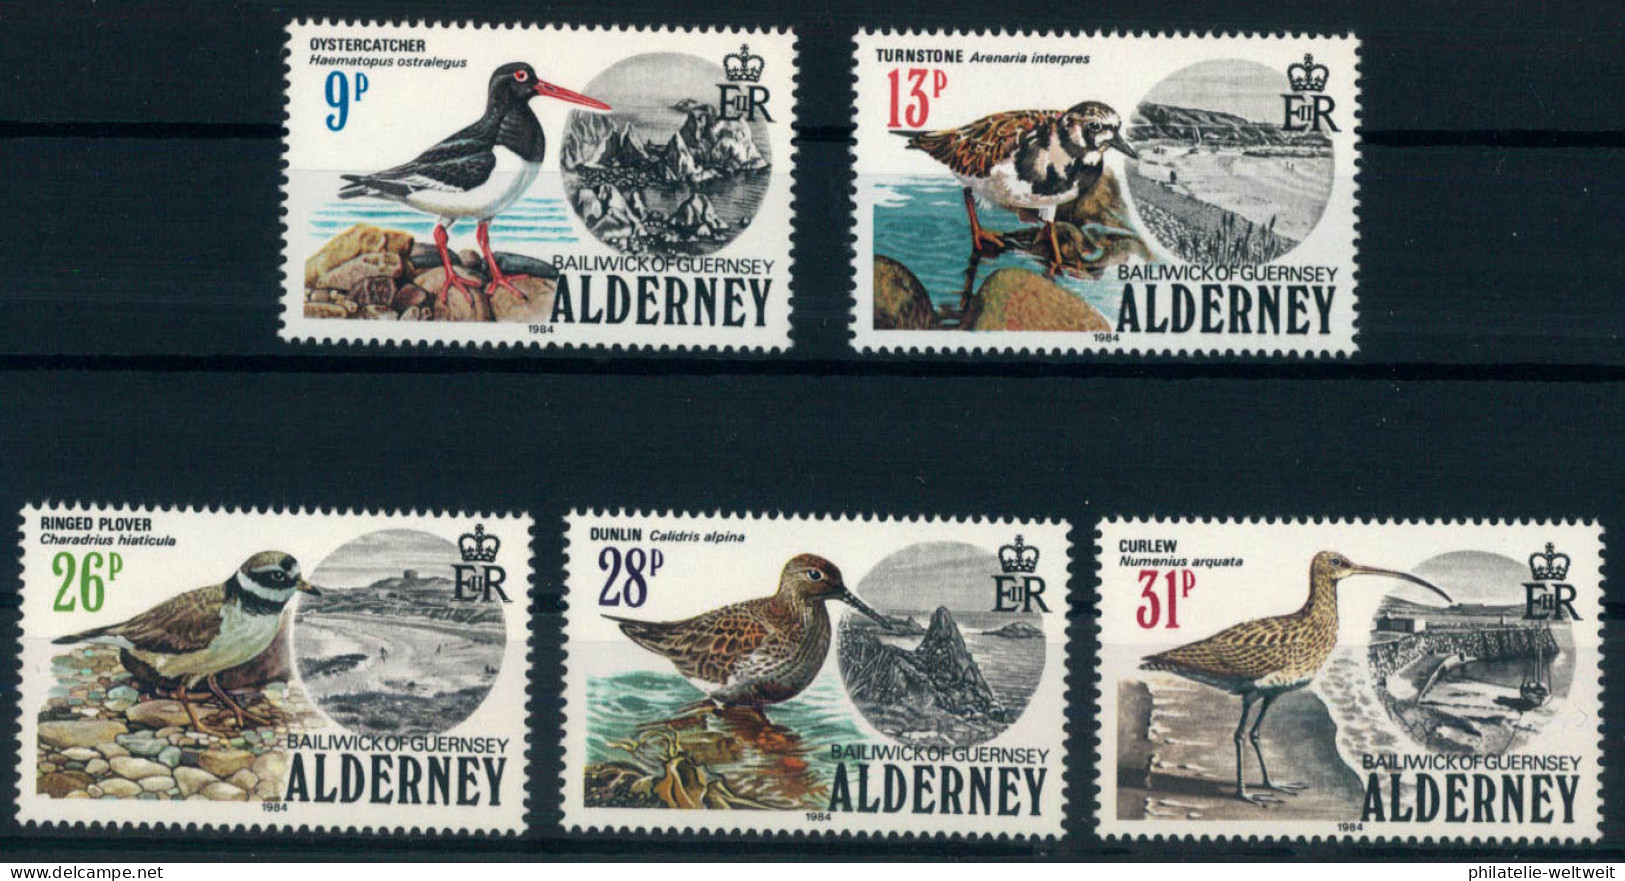 Alderney; Seevögel 1984 Kpl. **  (25,-) - Alderney